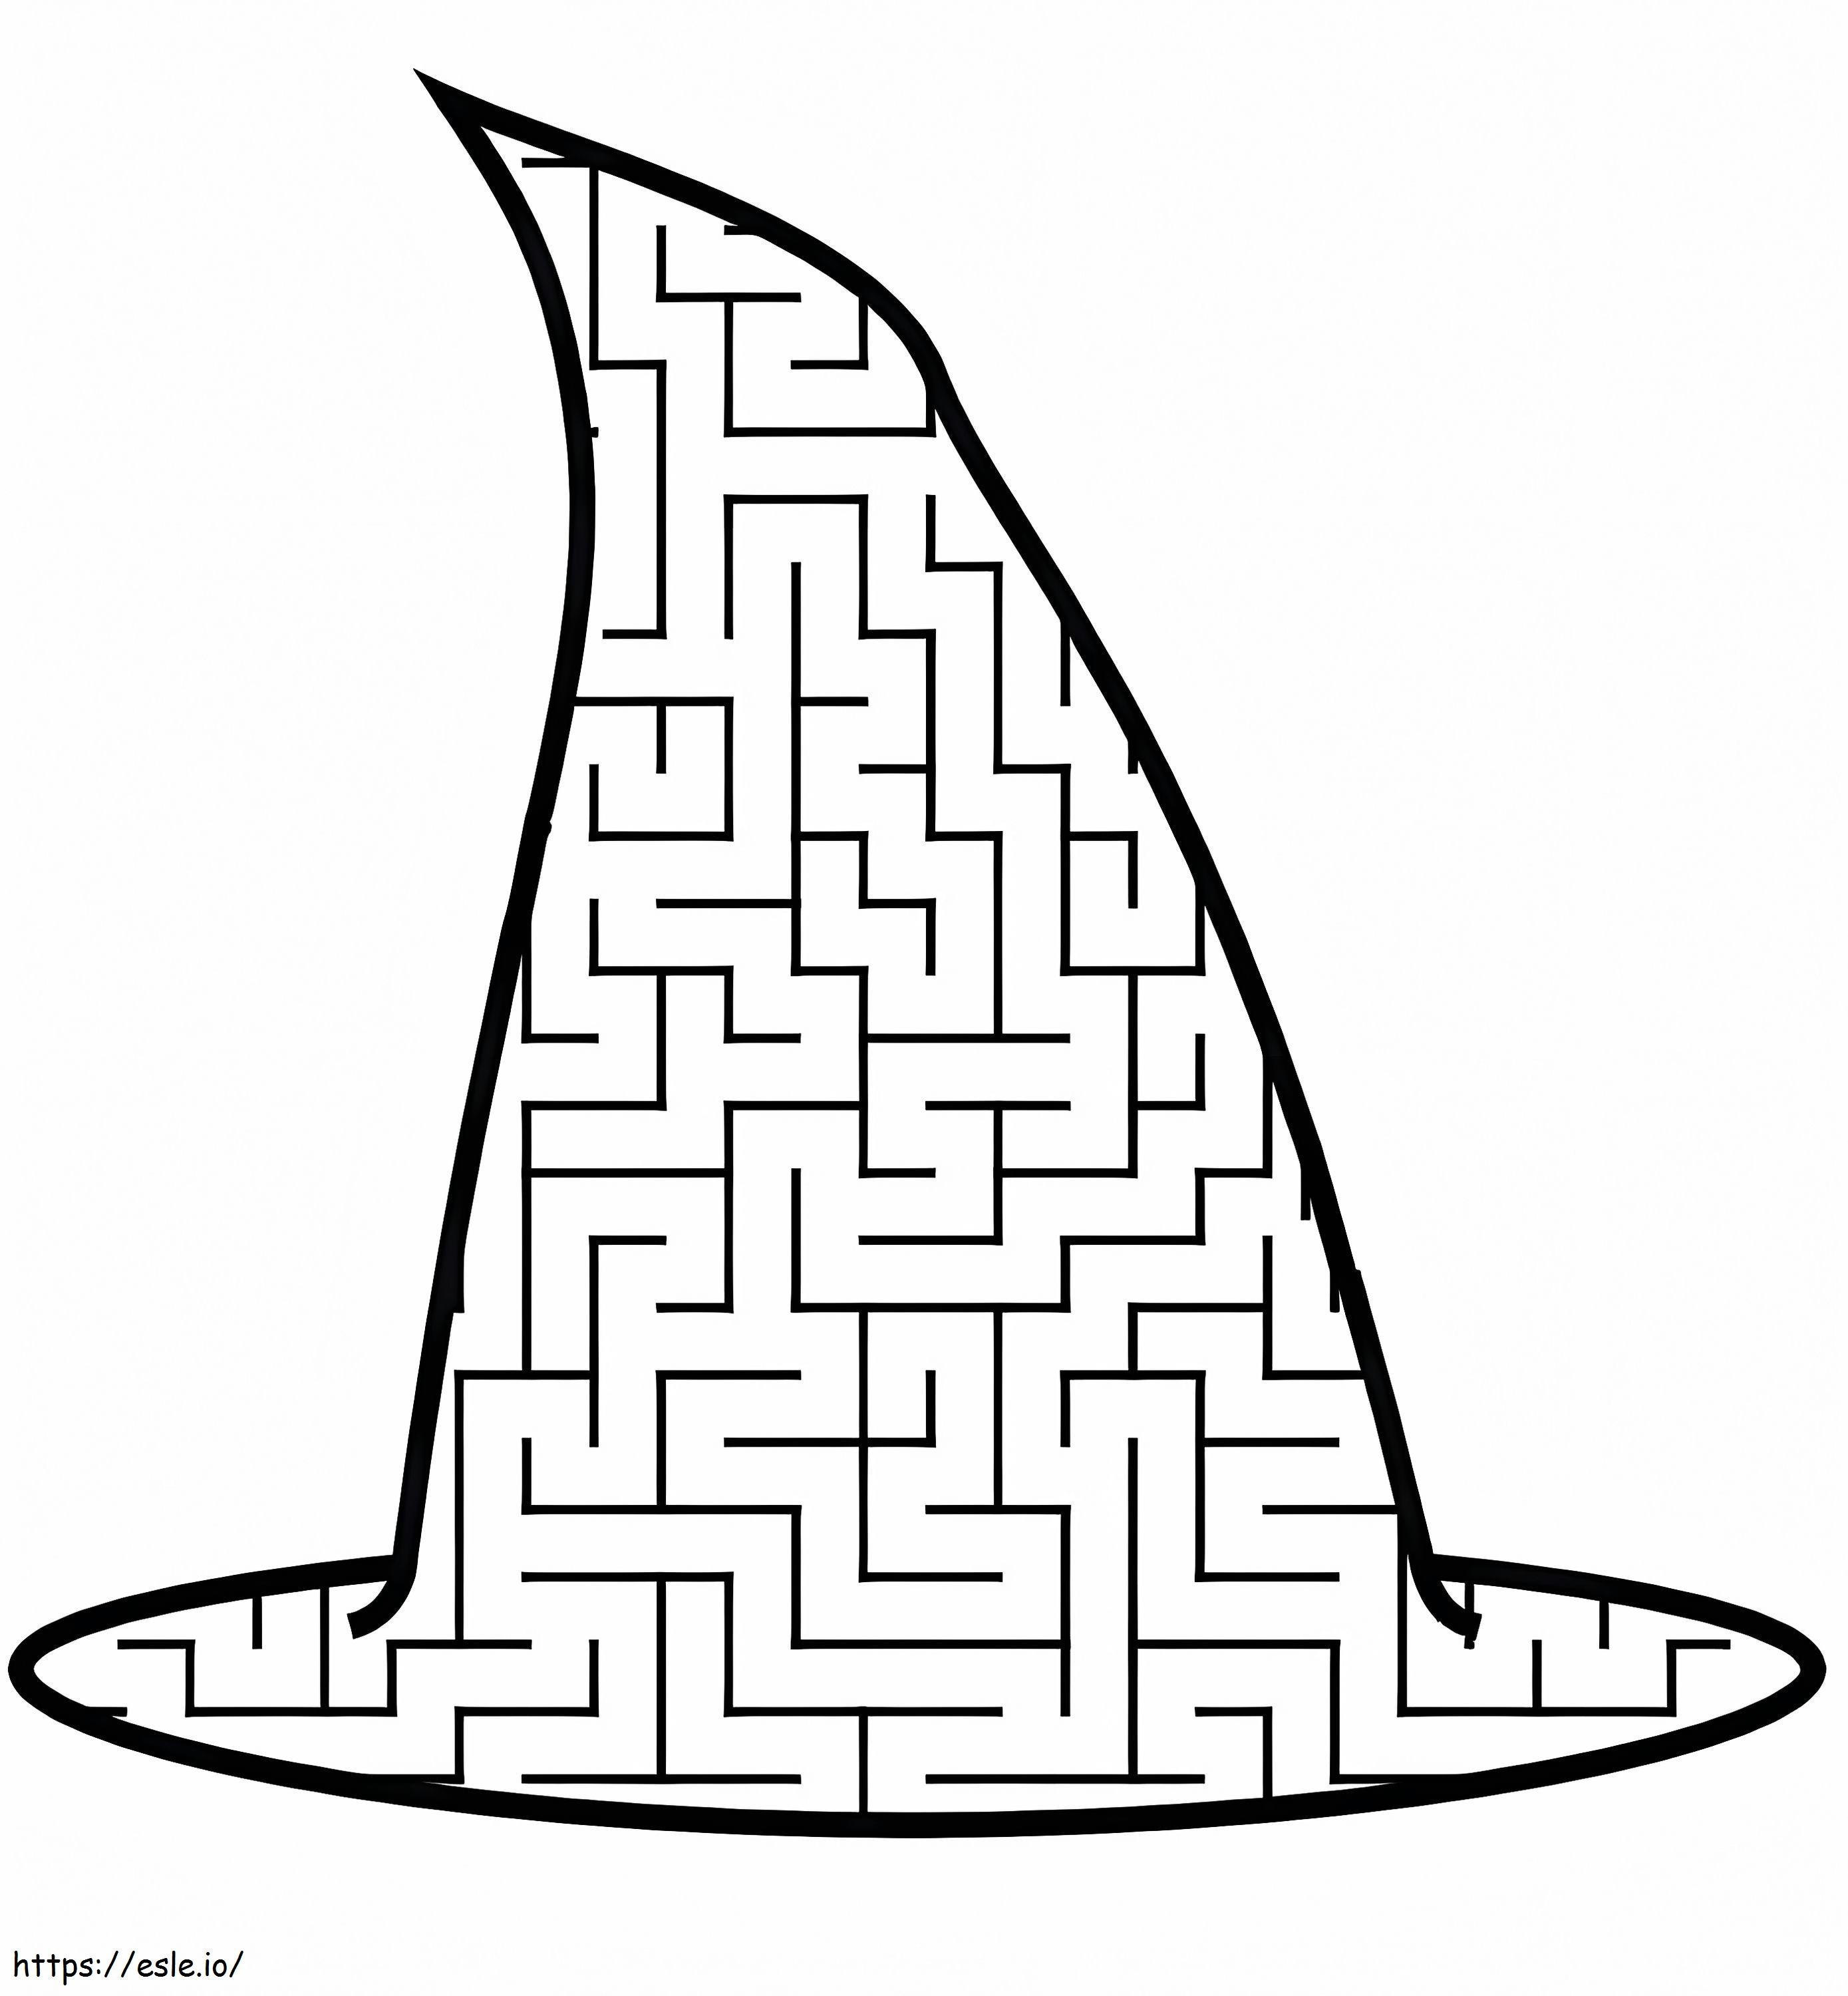 Hexenhut-Labyrinth ausmalbilder